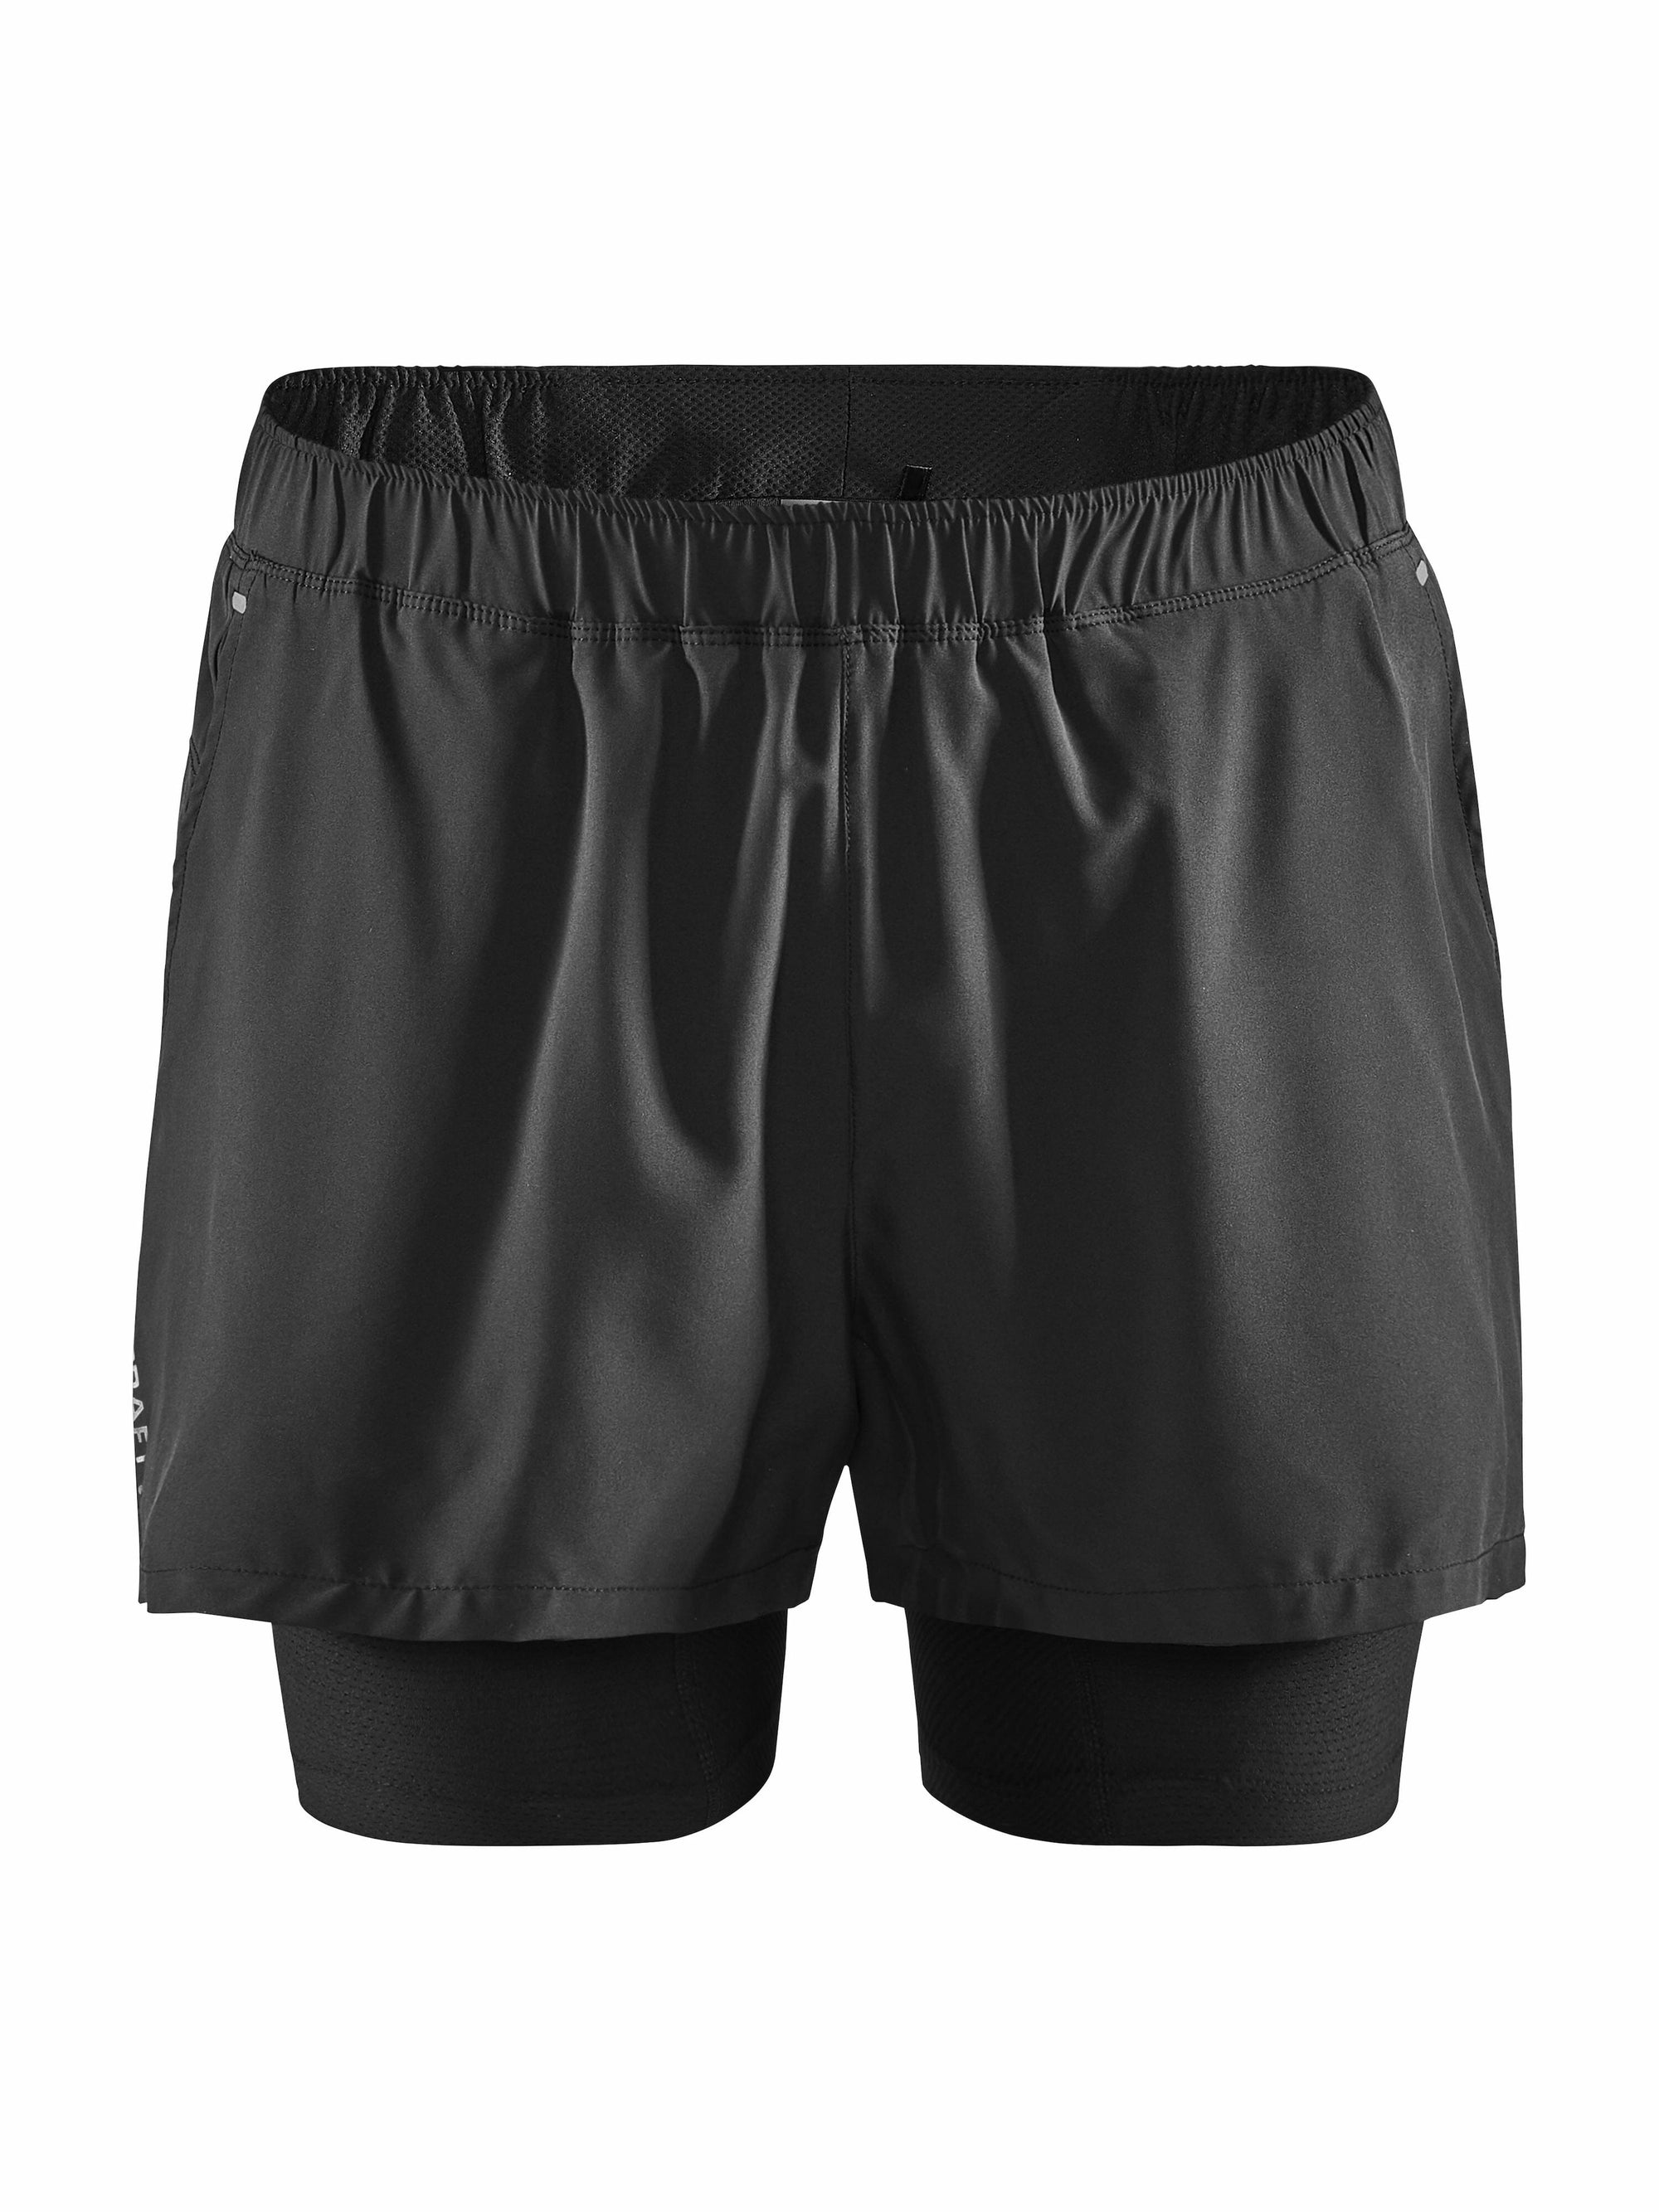 CRAFT Adv Essence 2-In-1 Stretch Shorts Men's Black L 